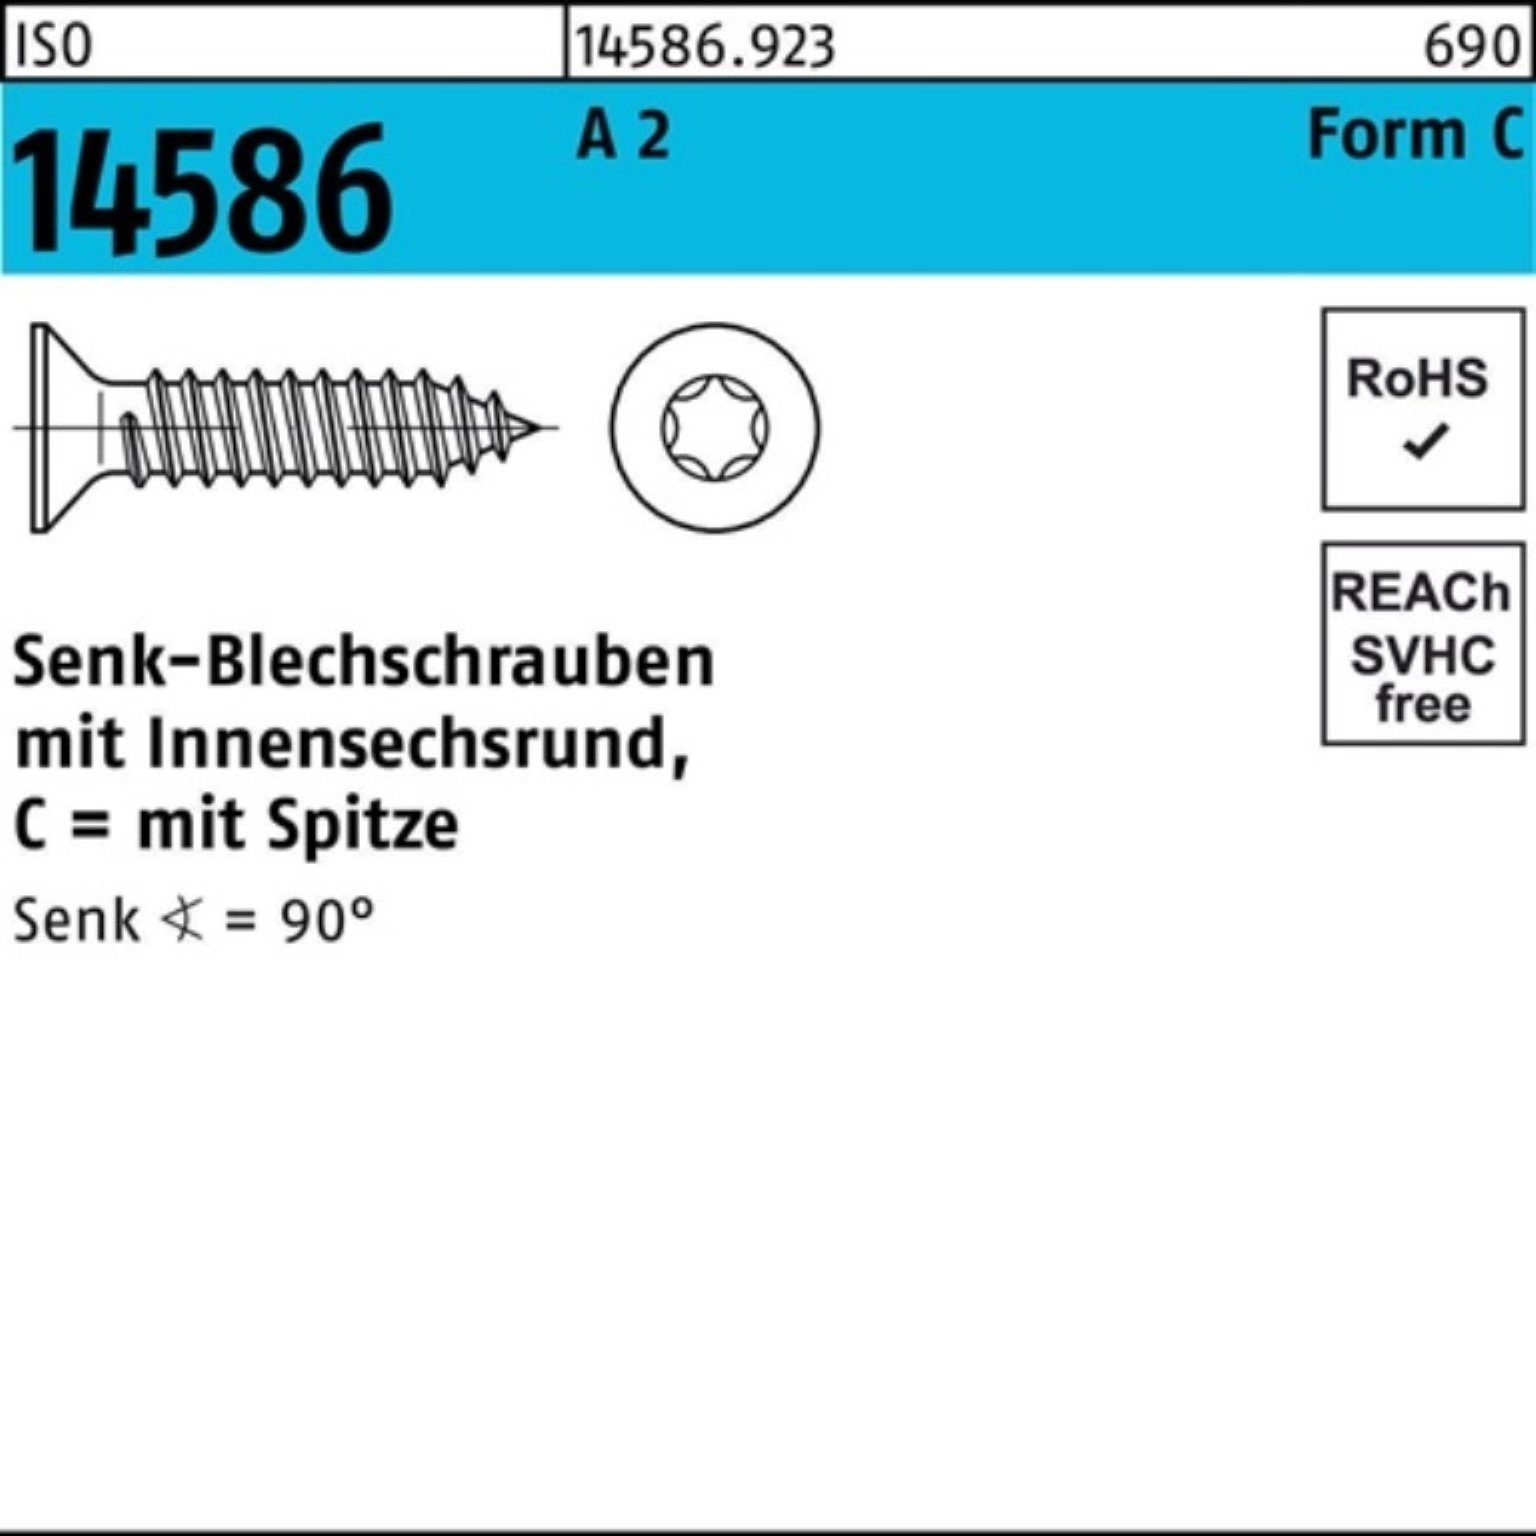 Reyher Schraube 500er ISO Senkblechschraube 5 ISR/Spitze T25 A Pack 14586 19 -C 2 5,5x